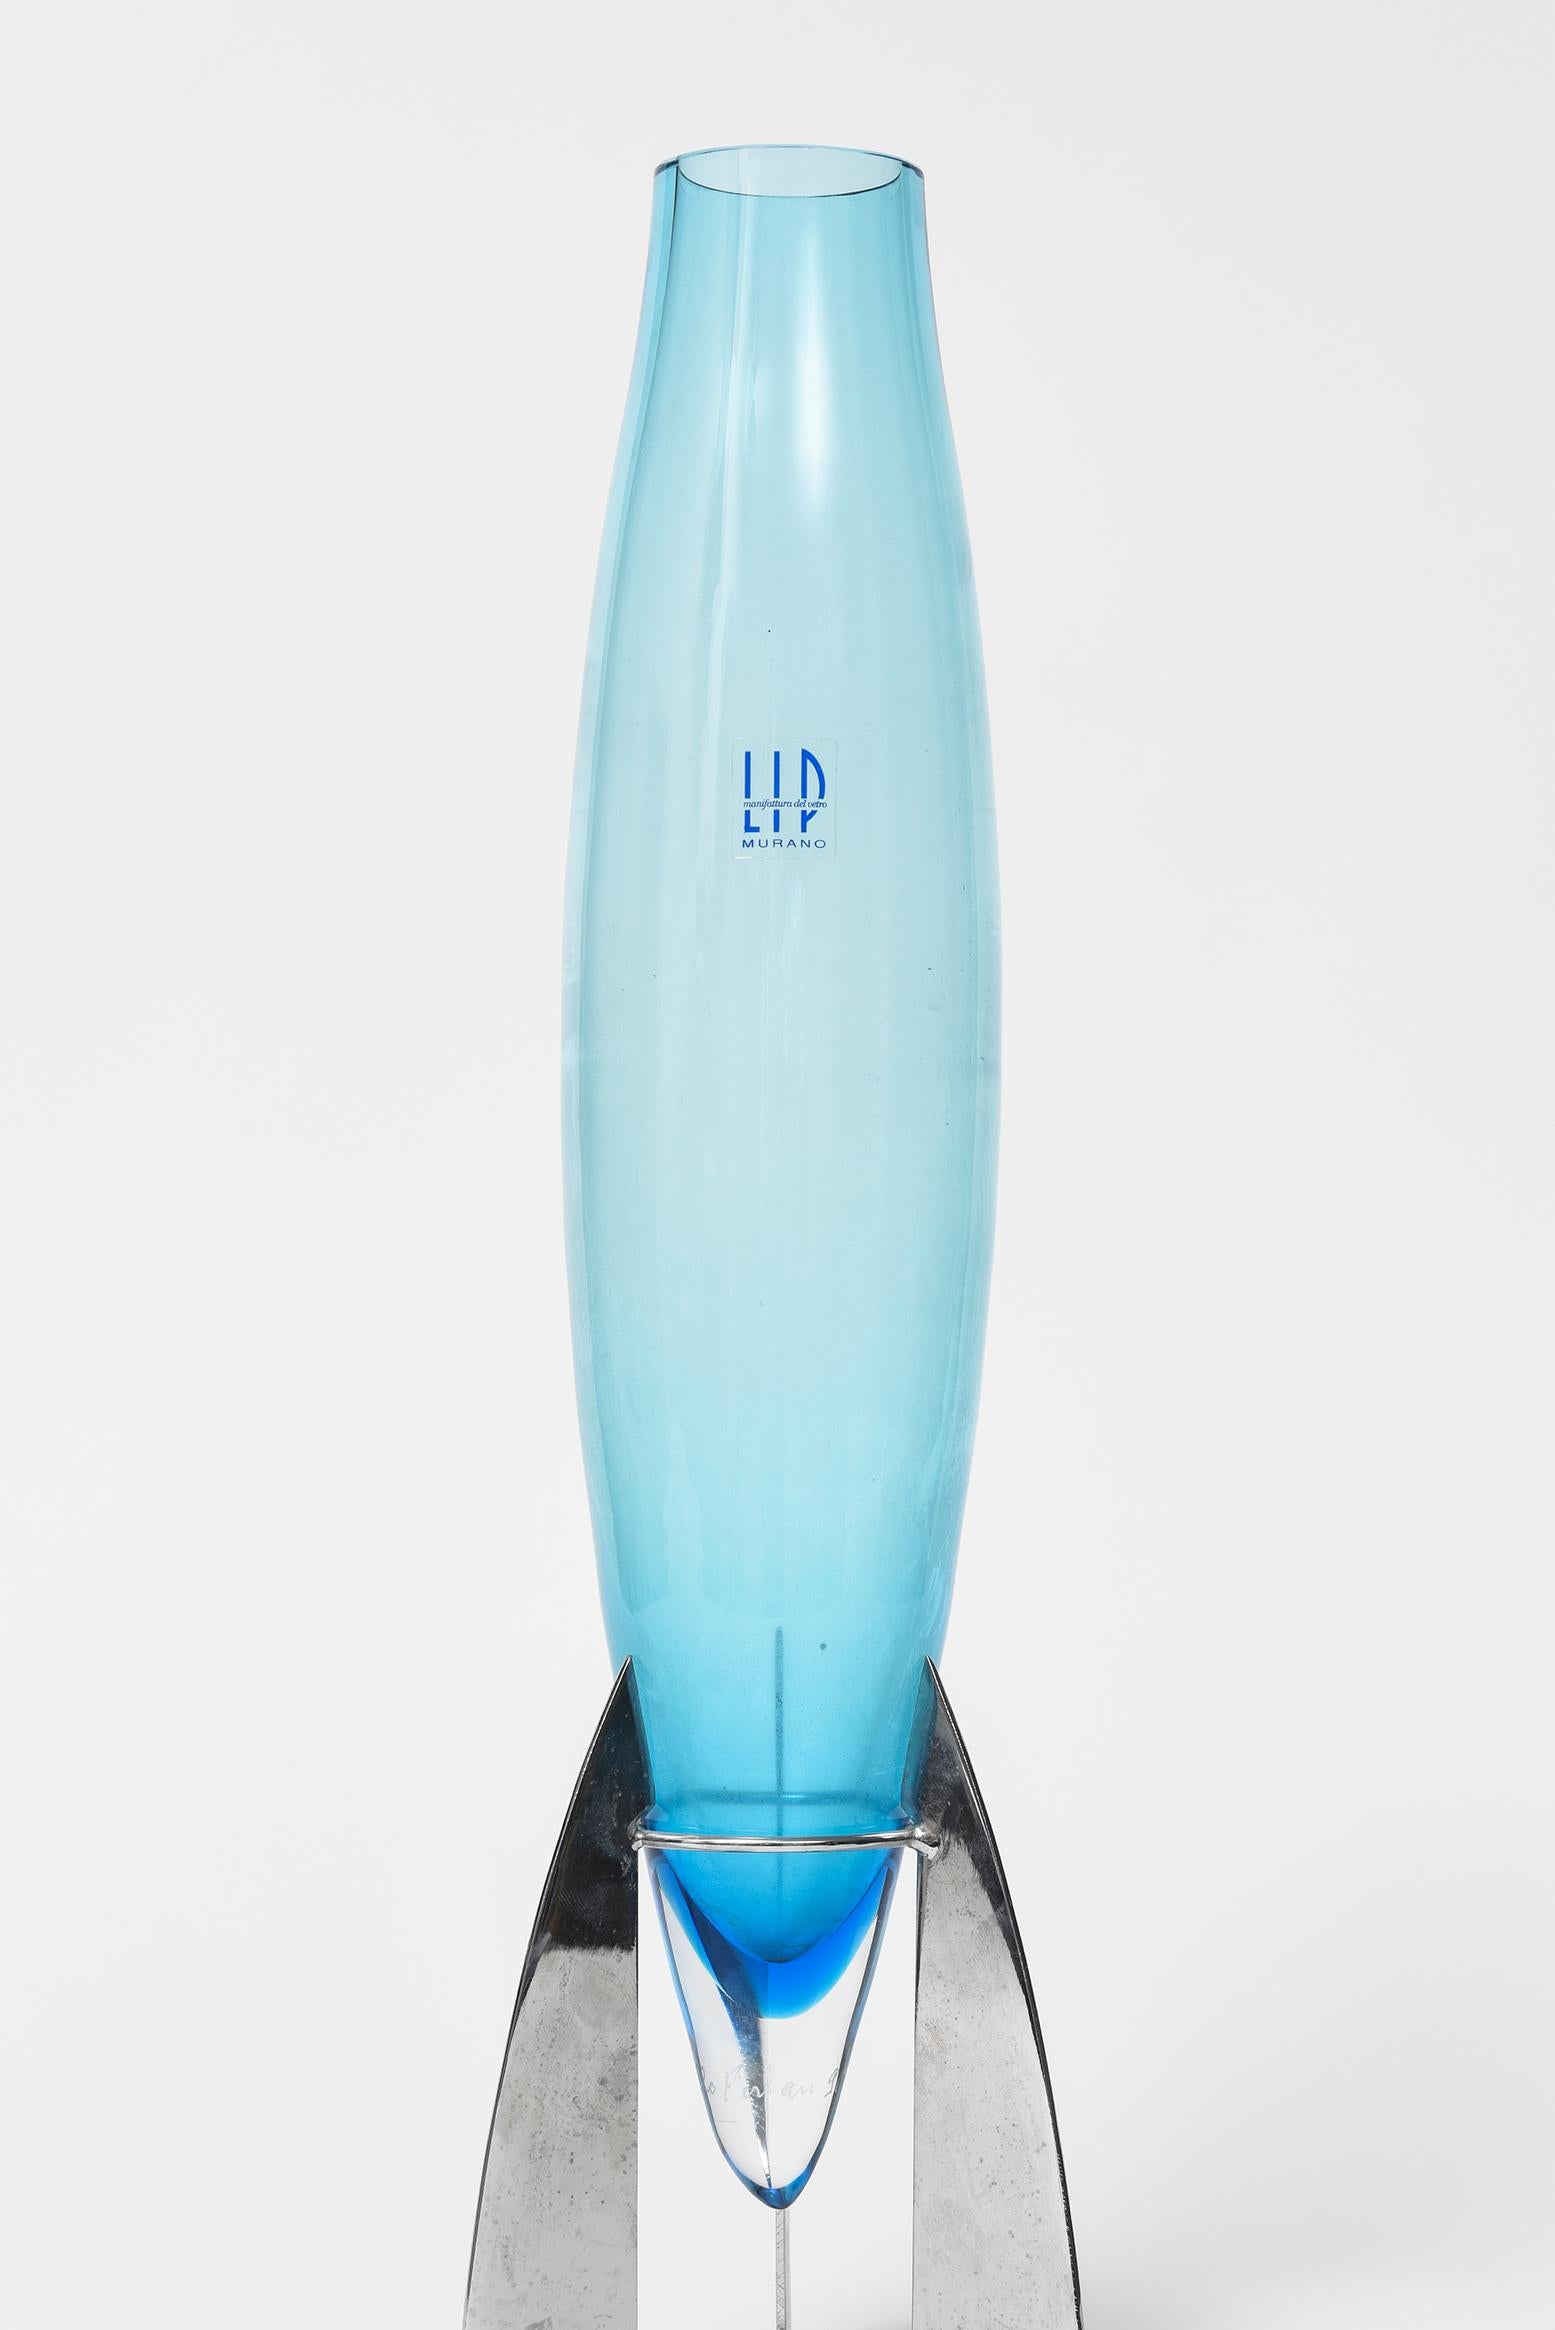 Vase italien en murano bleu Marcello Furlan LIP Manifattura del Vetro avec support en métal chromé. Le vase ressemble à une fusée industrielle.

Il a l'étiquette autocollante originale LIP manifattura del vetro vase et est gravé signé sur le fond.